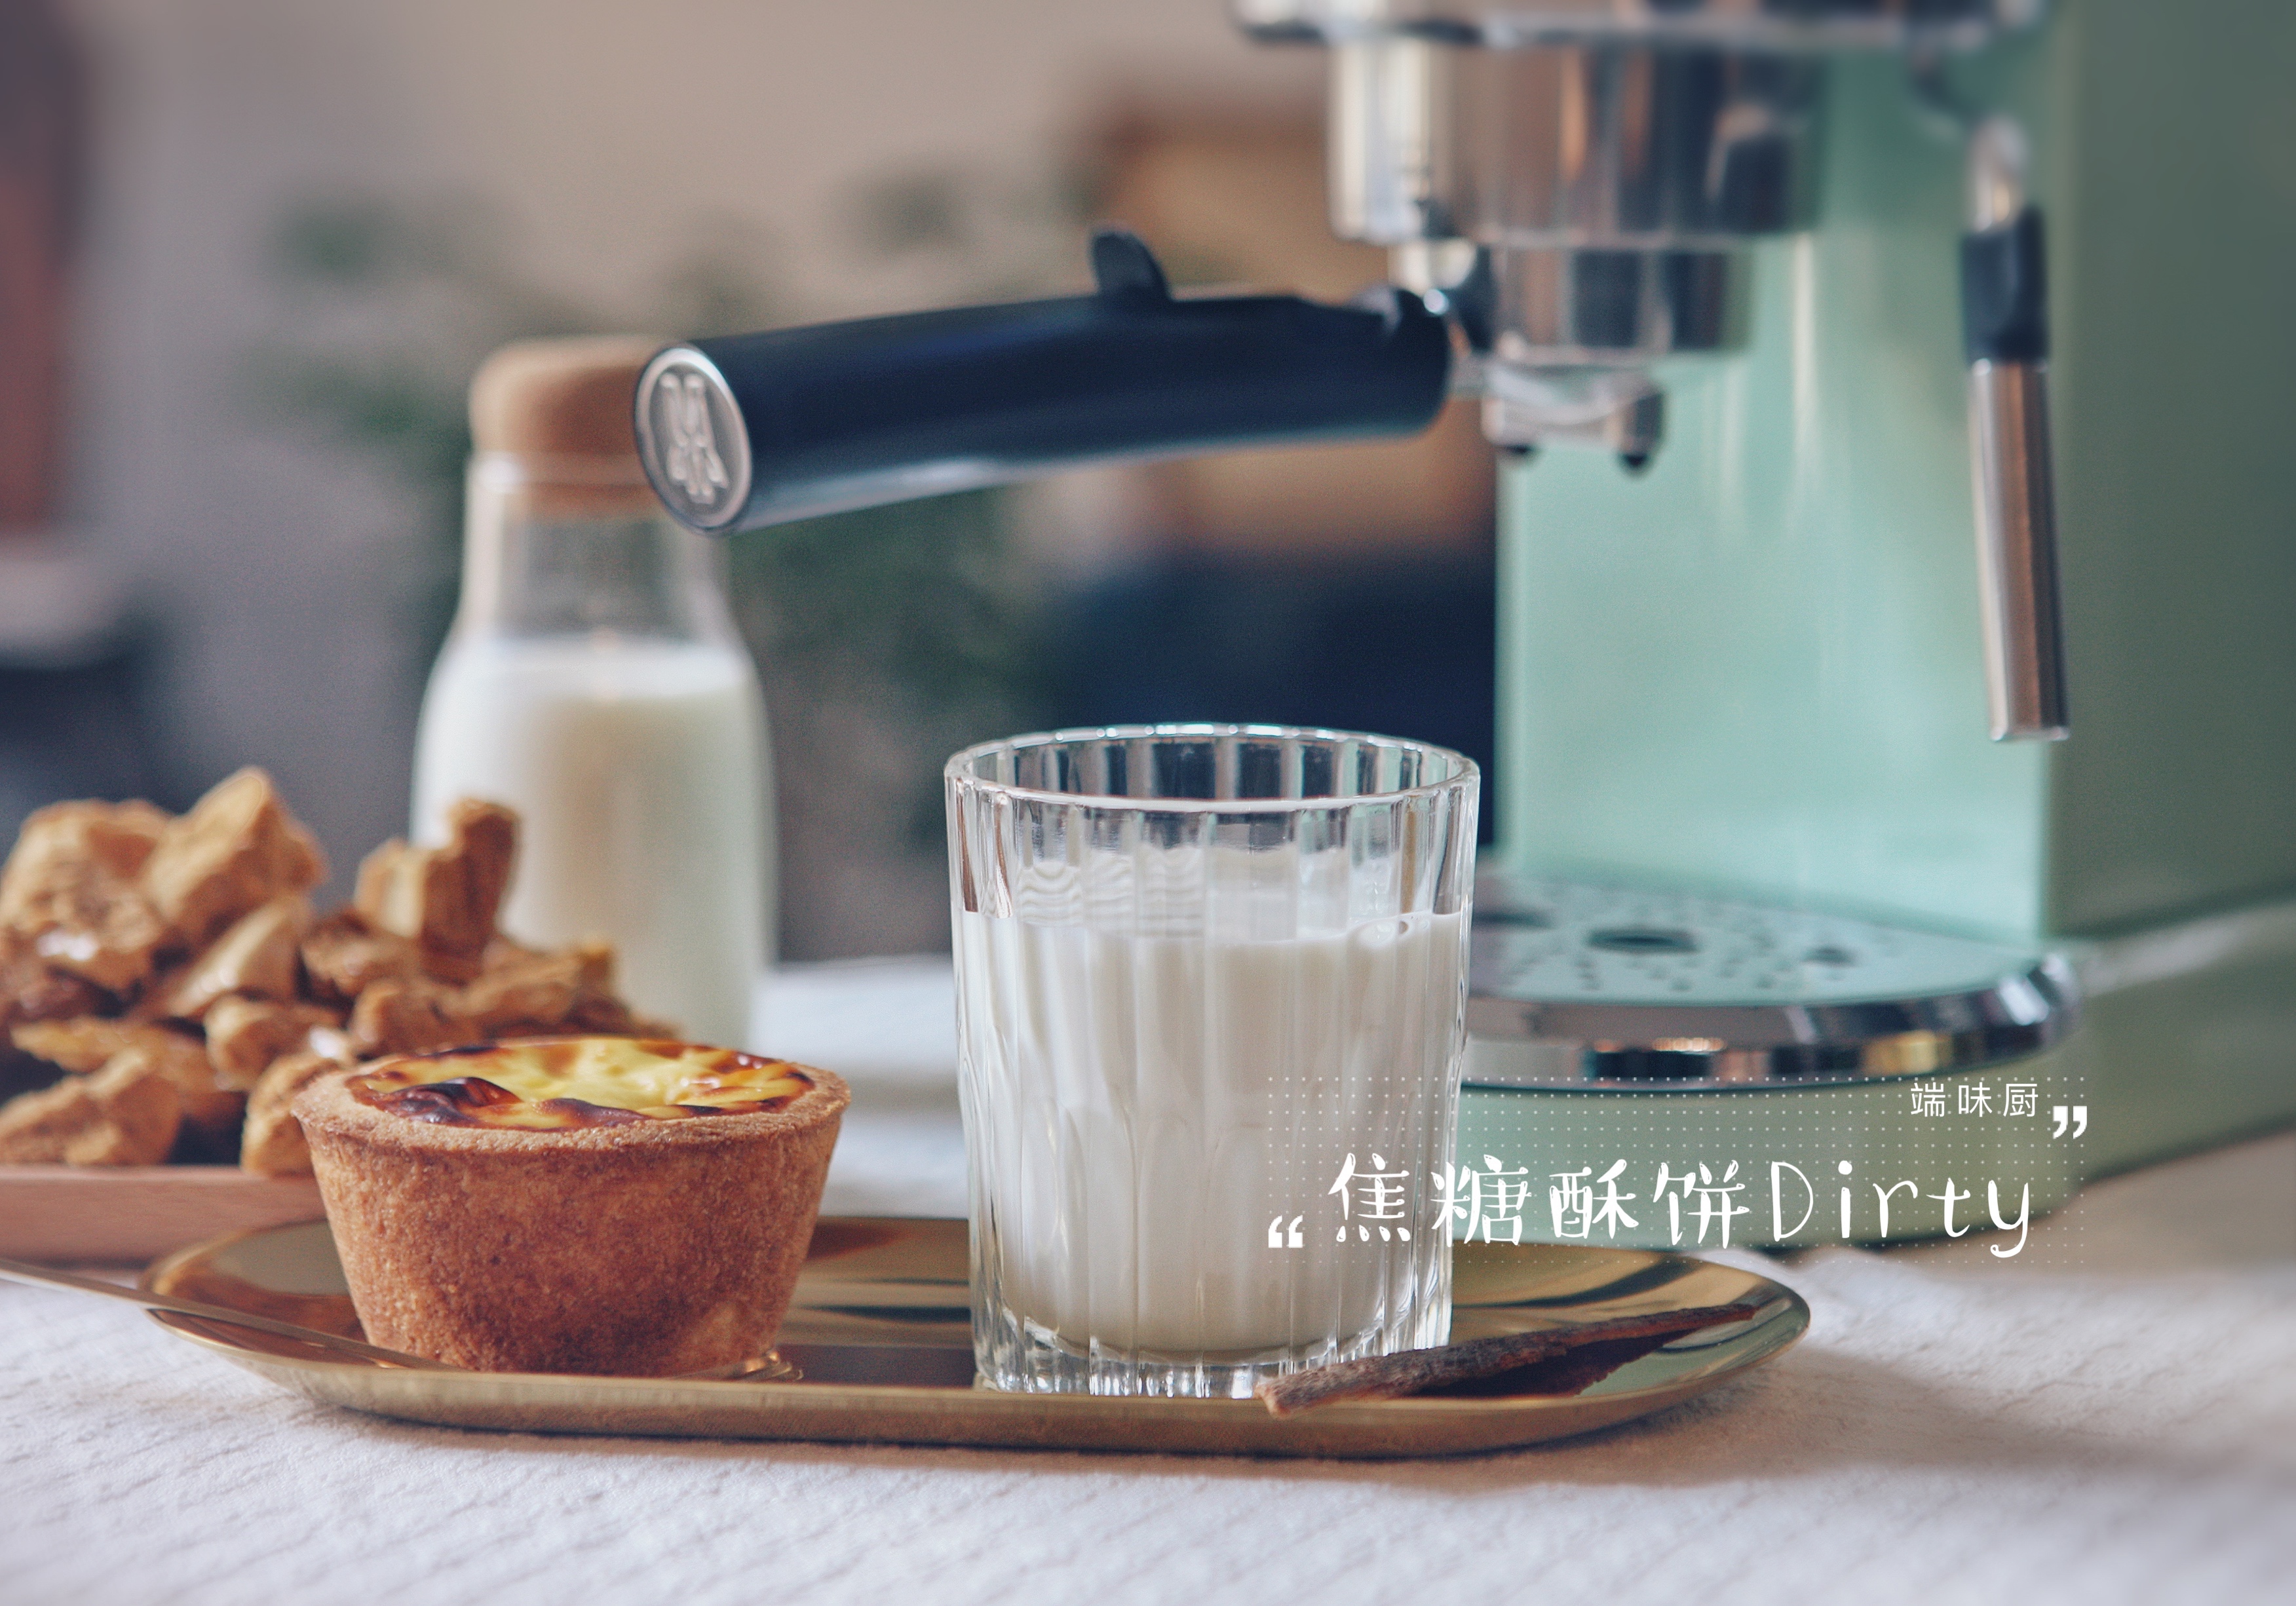 马克西姆咖啡机食谱——风靡整个韩国的网红咖啡——肉桂焦糖酥饼Dirty的做法 步骤13